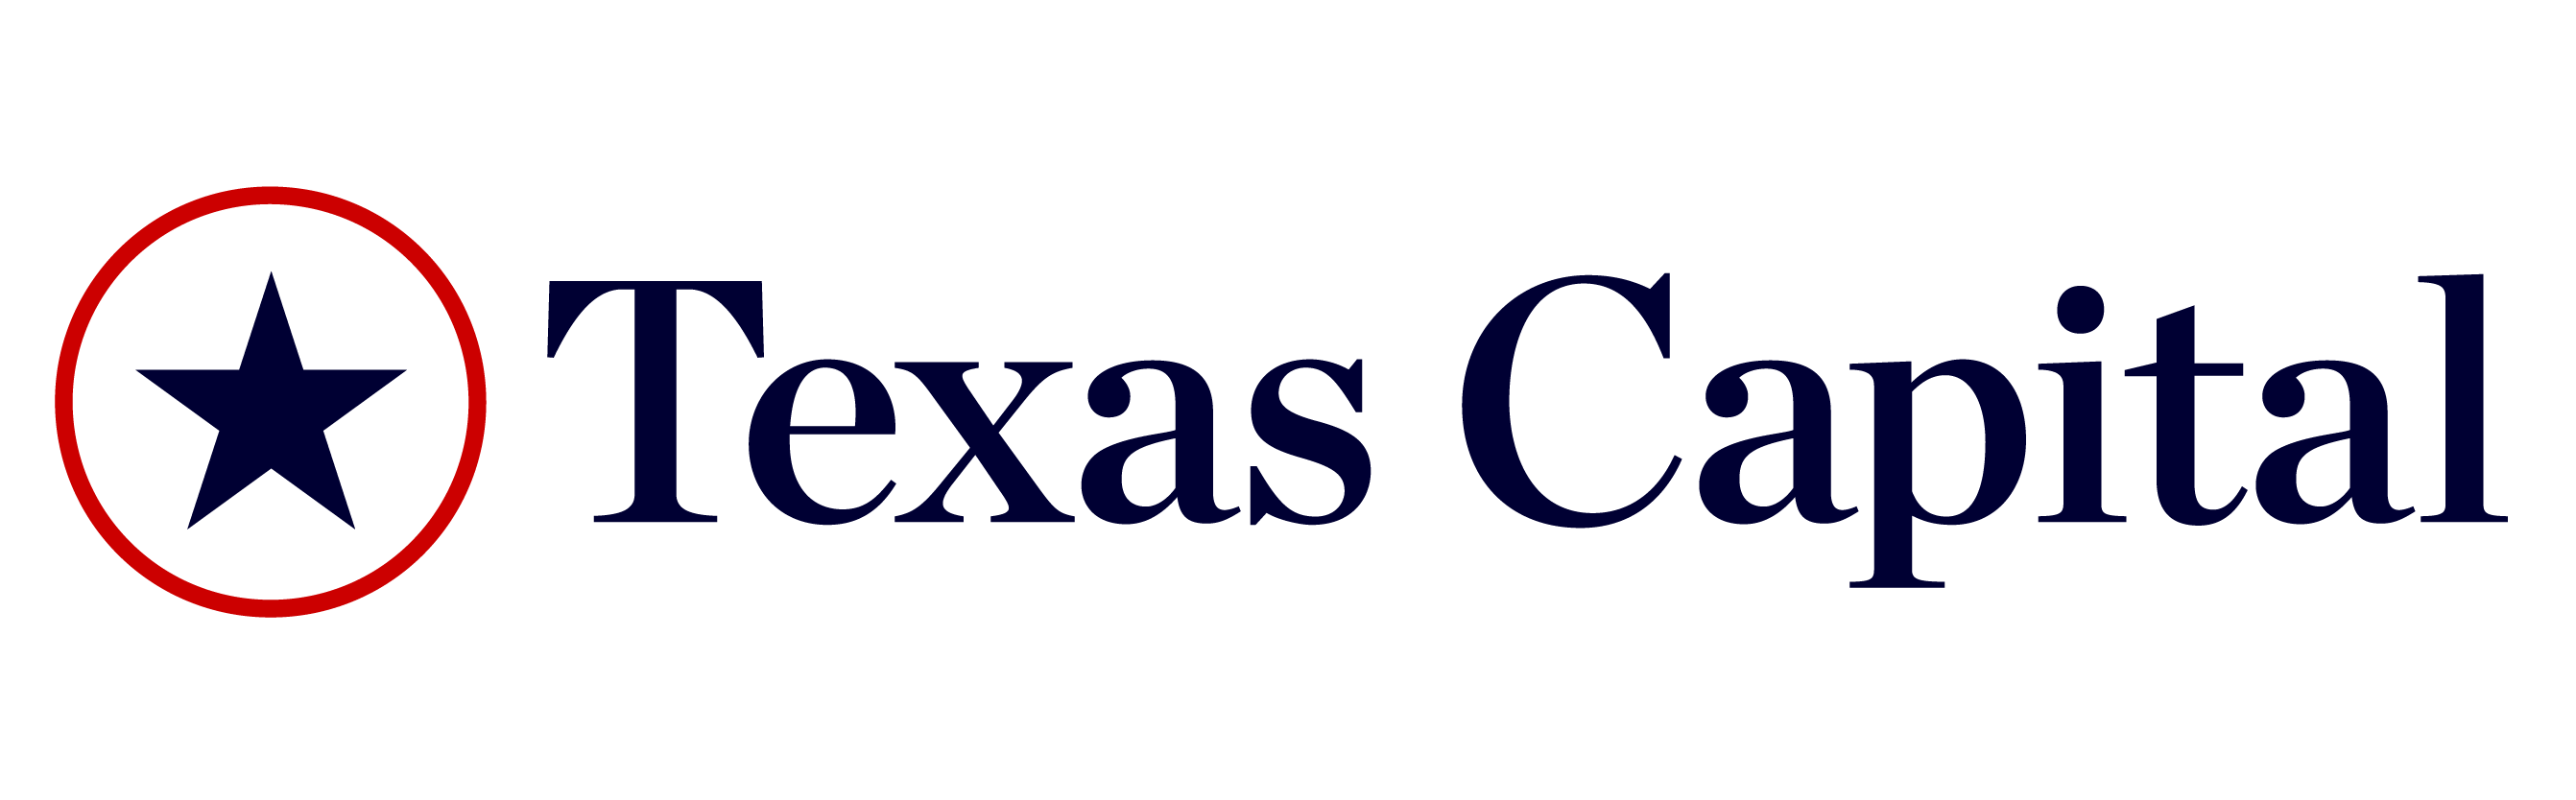 Texas Capital Securities